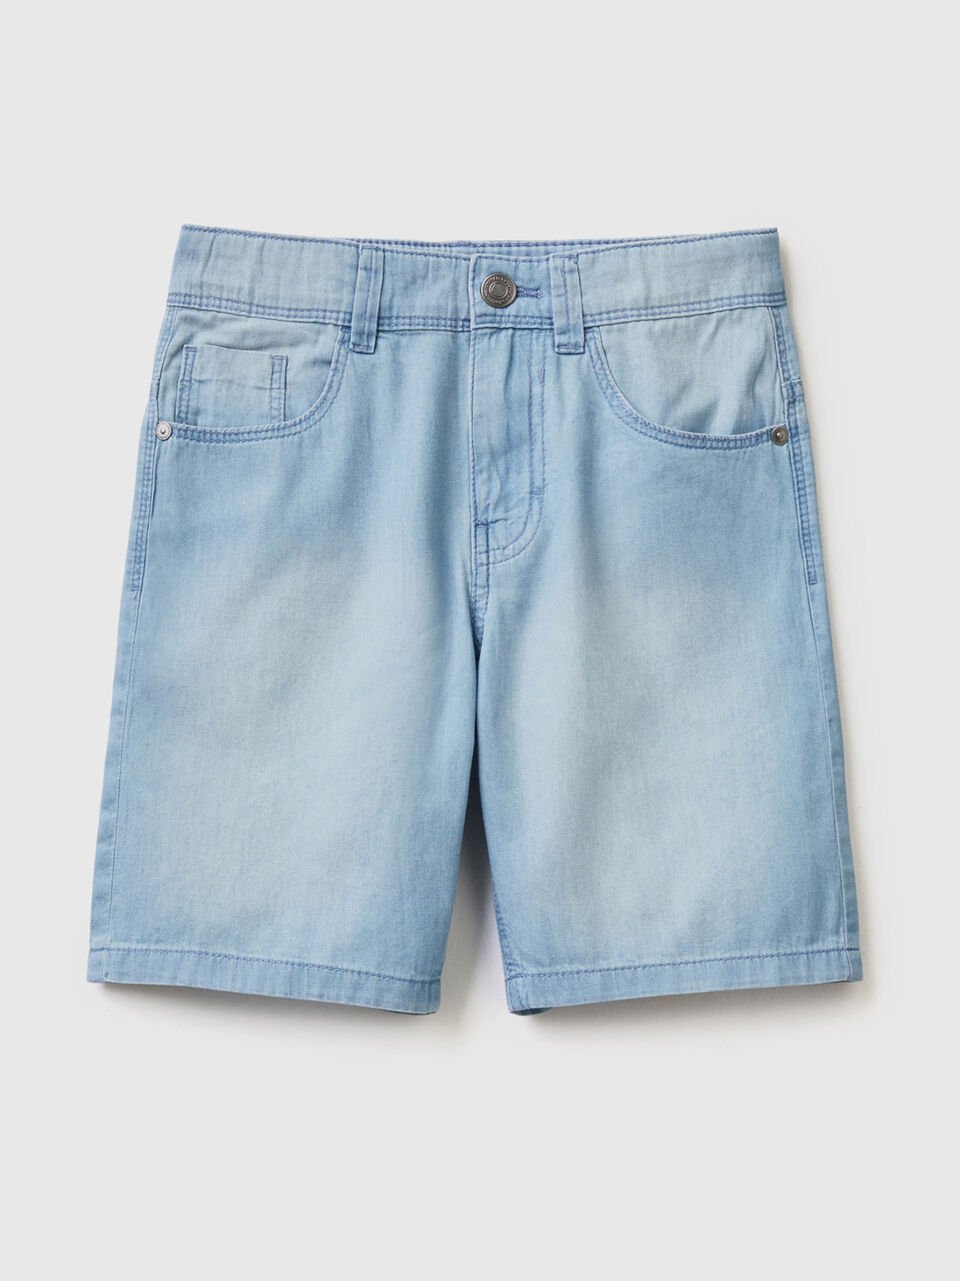 Bermuda effetto jeans Prezzi Outlet